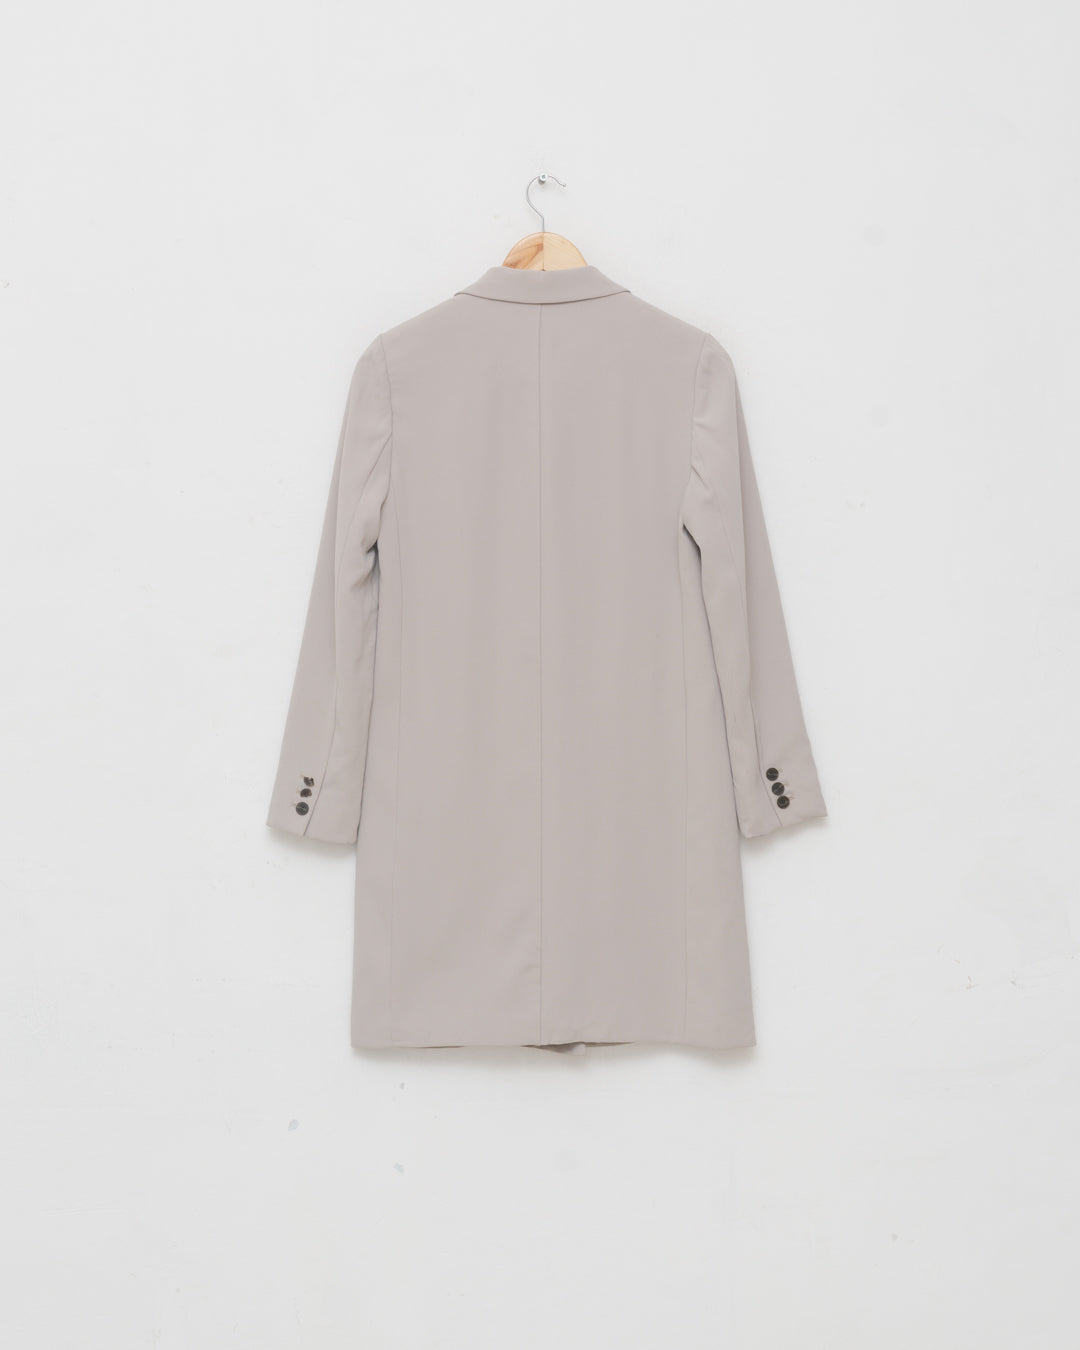 Vera Wang Minimalist Short Coat